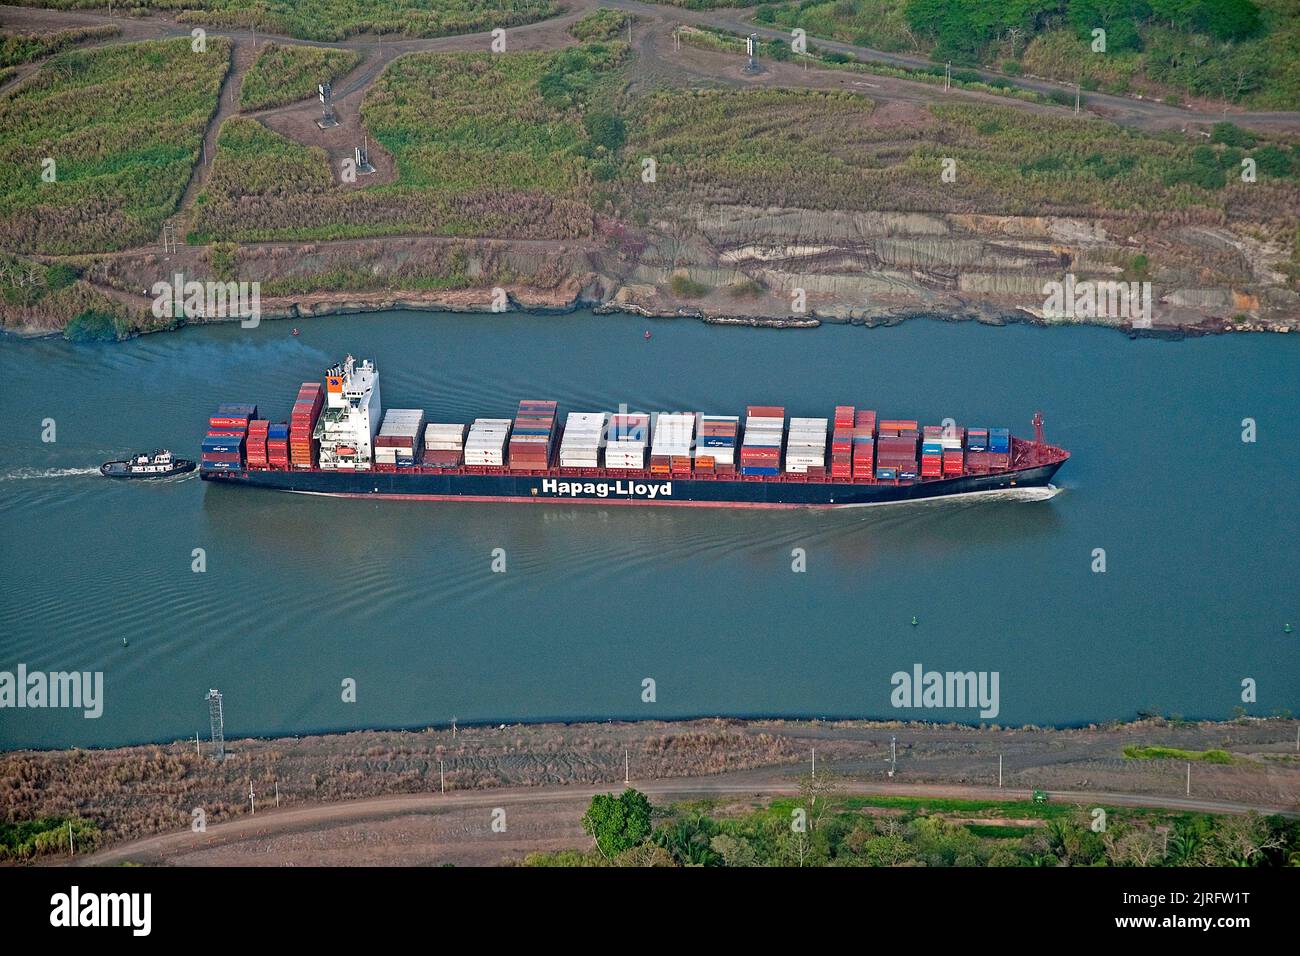 Nave container Hapag Lloyd sul canale di Panama, la via d'acqua artificiale più importante della parola, Panama Foto Stock